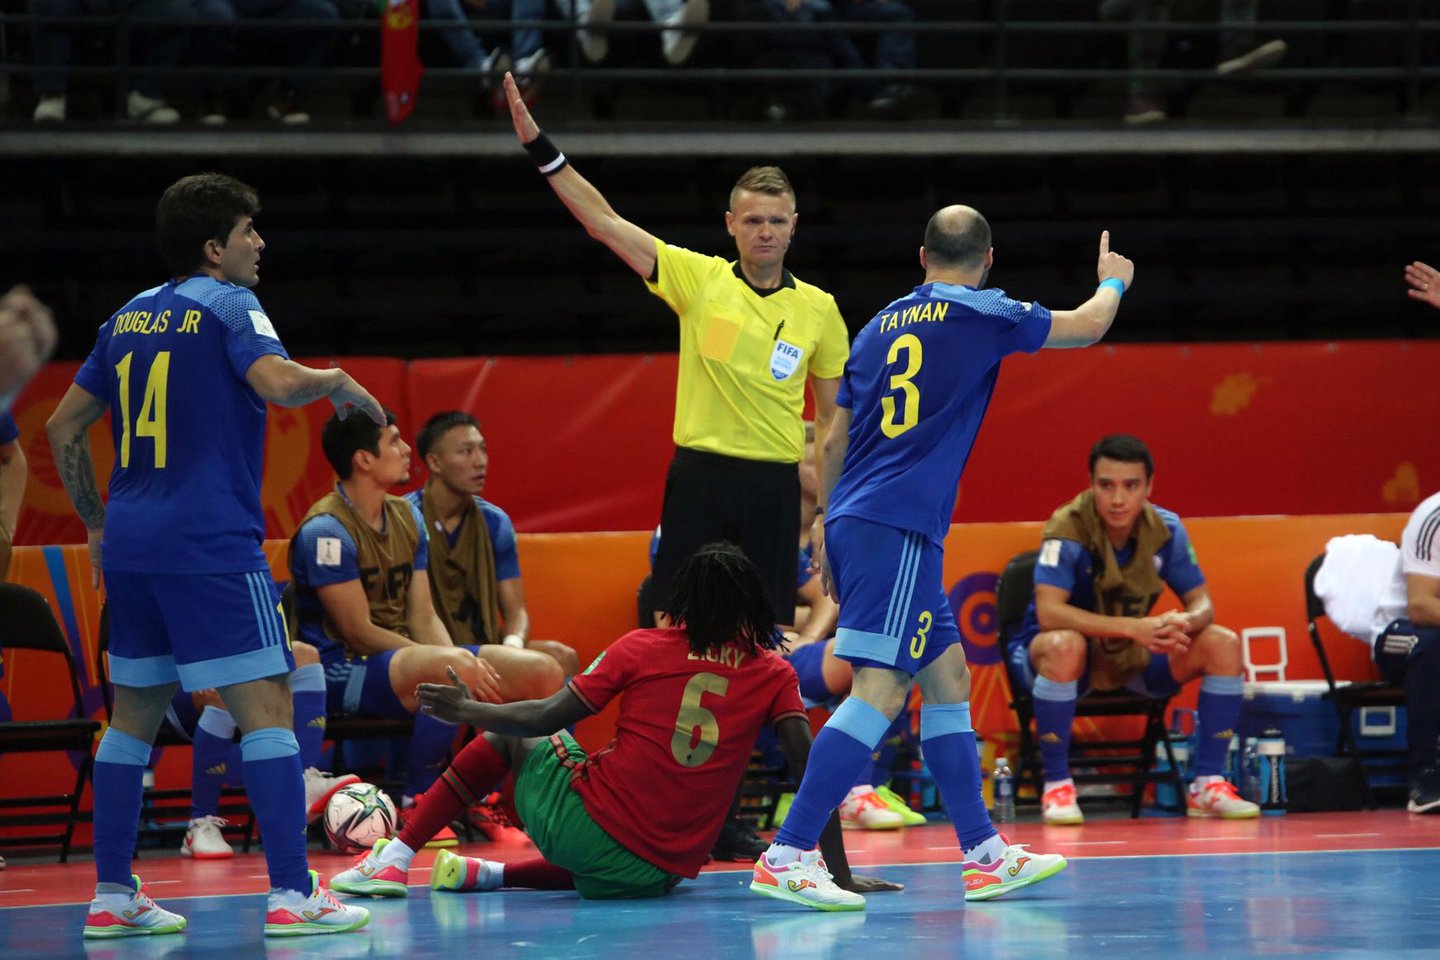  Pasaulio salės futbolo čempionato pusfinalis Portugalija - Kazachstanas.<br> M. Patašius nuotr.